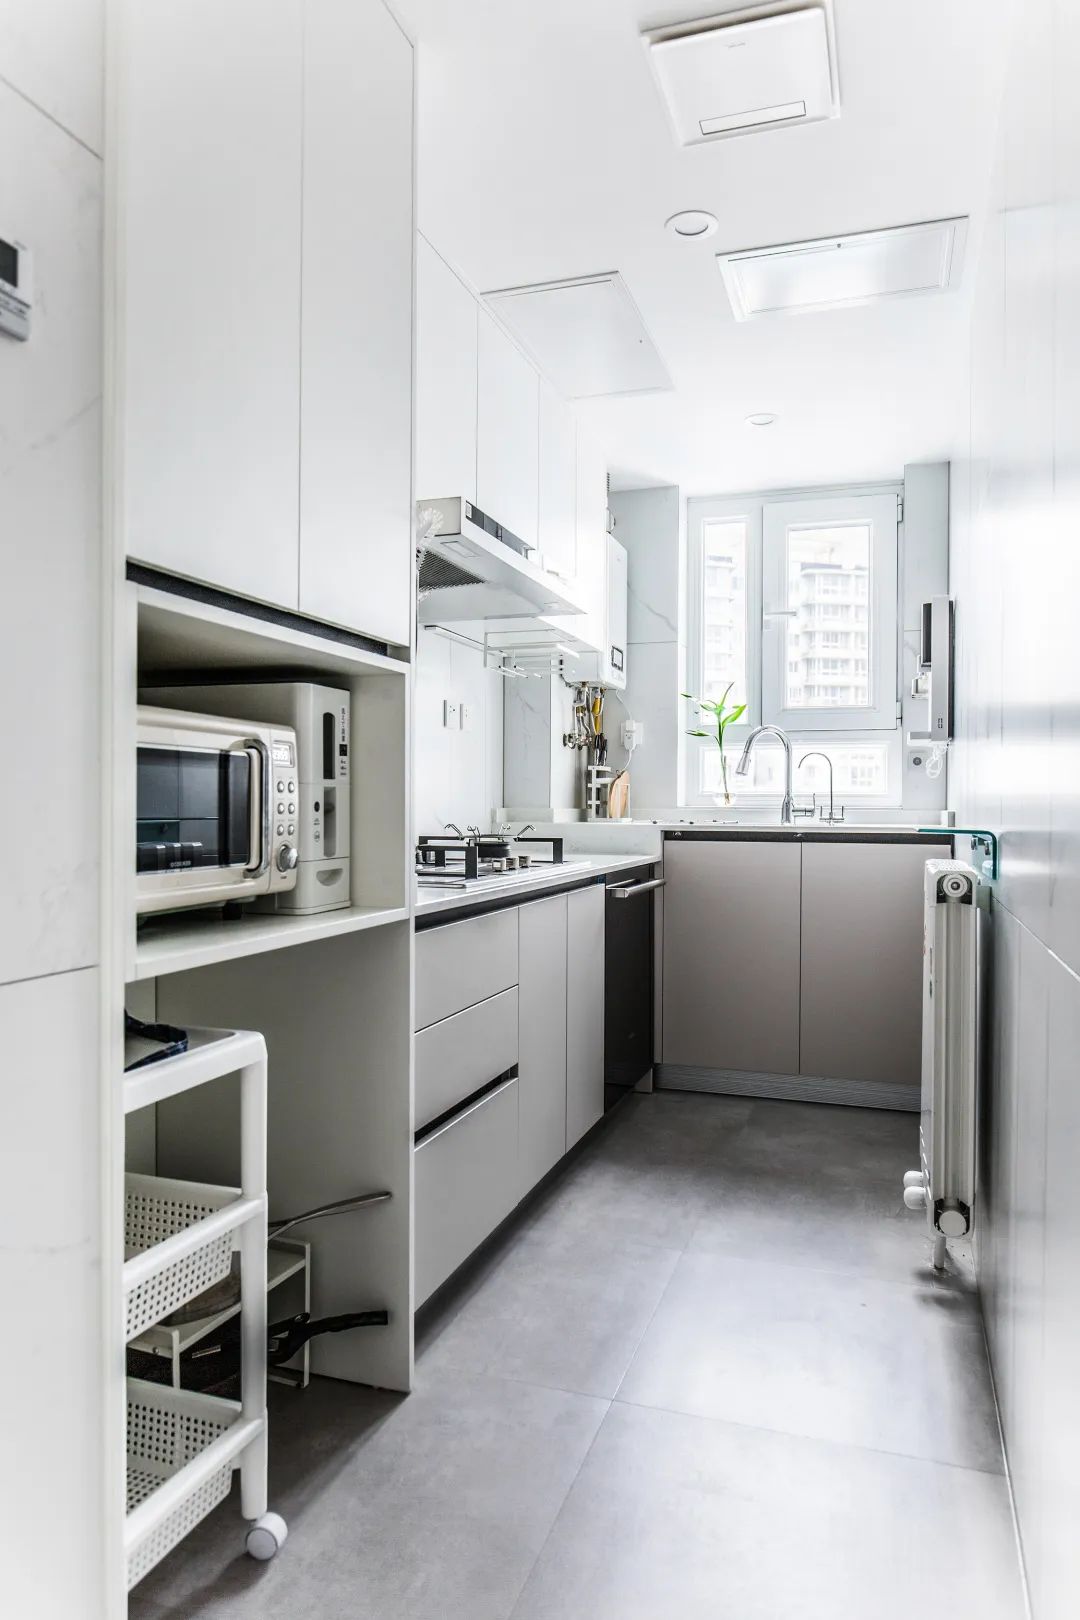 現代輕奢風格家裝設計室內裝修效果圖-廚房